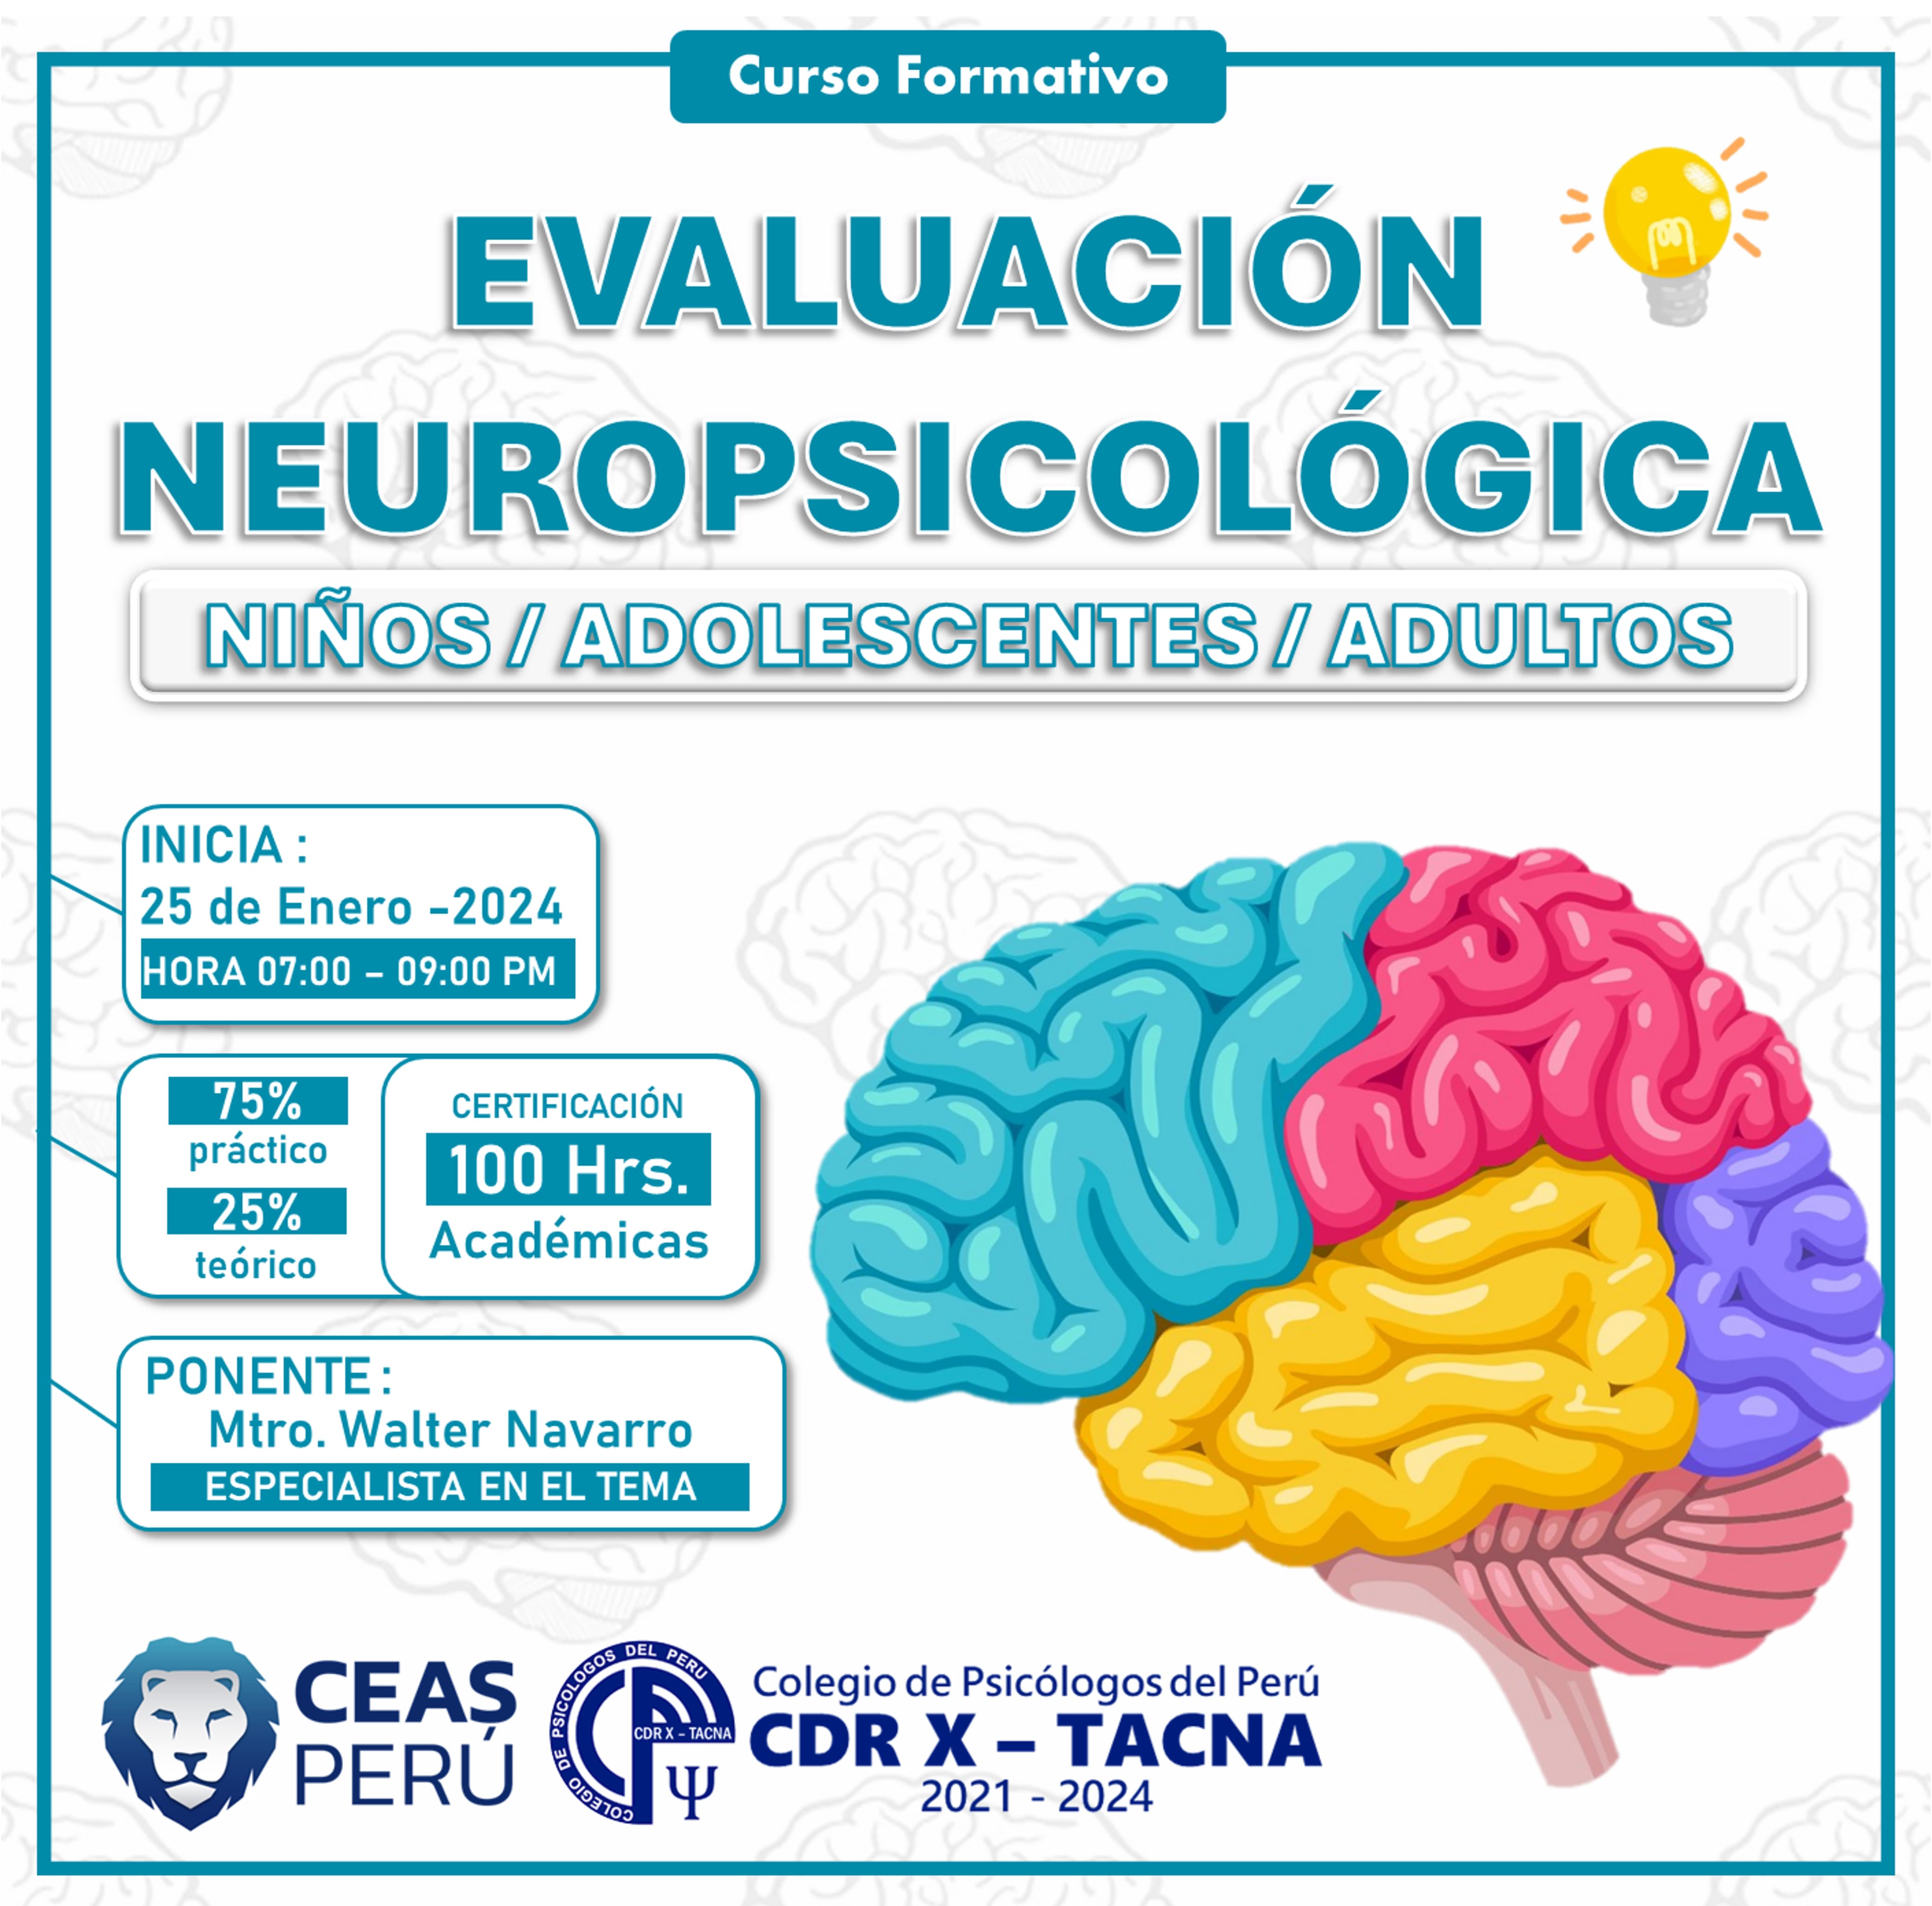 Course Image EVALUACIÓN NEUROPSICOLÓGICA NIÑOS / ADOLESCENTES / ADULTOS 